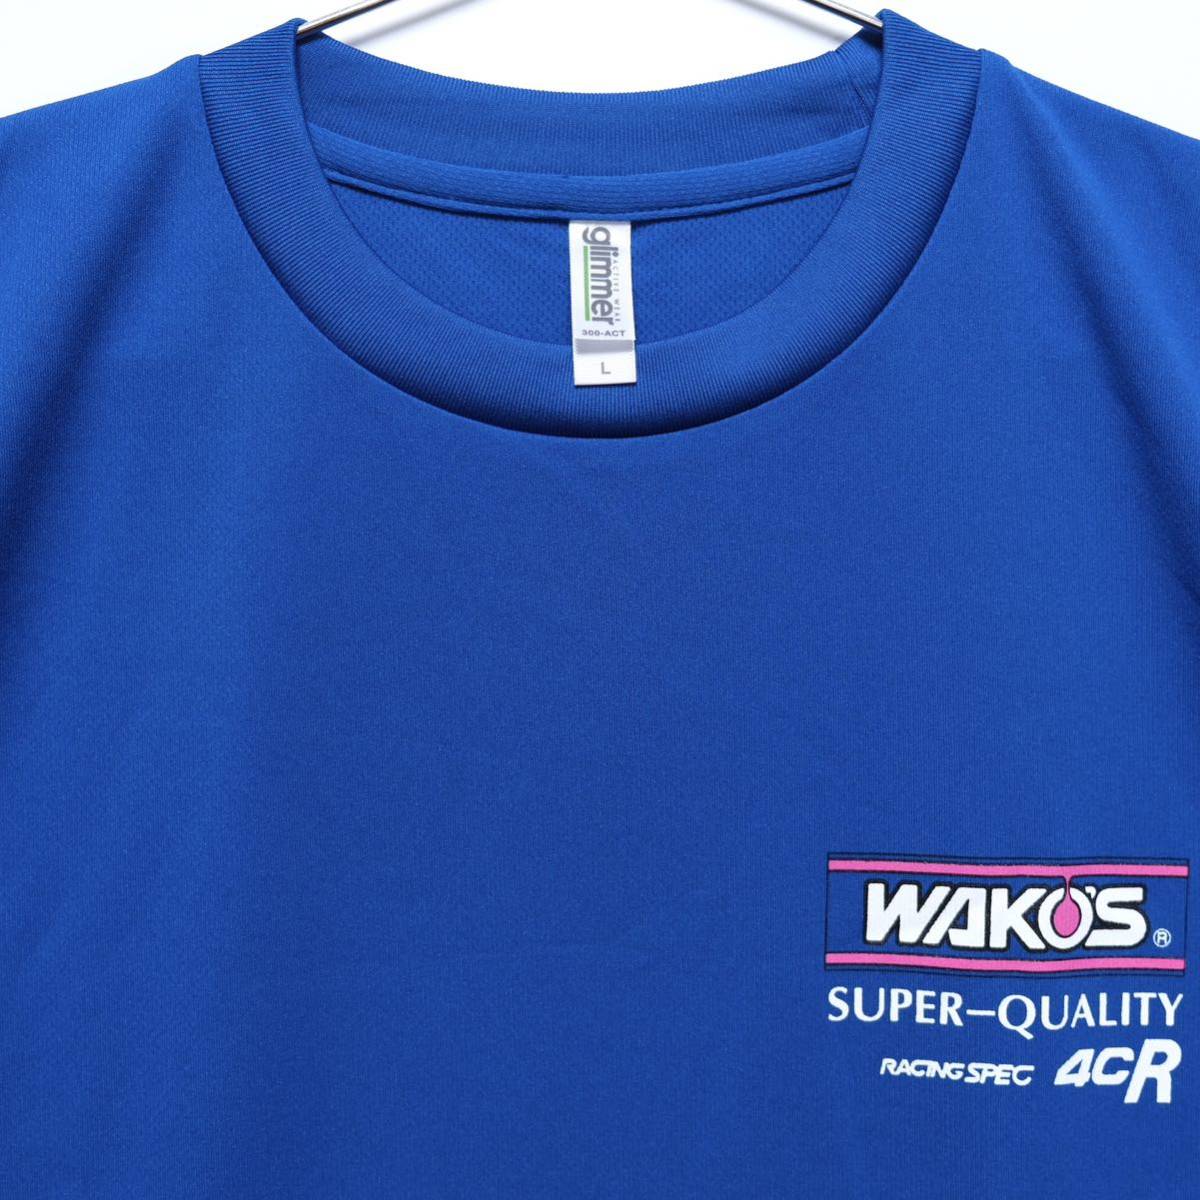 【送料無料】WAKO'S(ワコーズ)/ドライTシャツ/SUPER QUALITY RACING SPEC 4CR/吸汗速乾素材/ブルー/Lサイズ